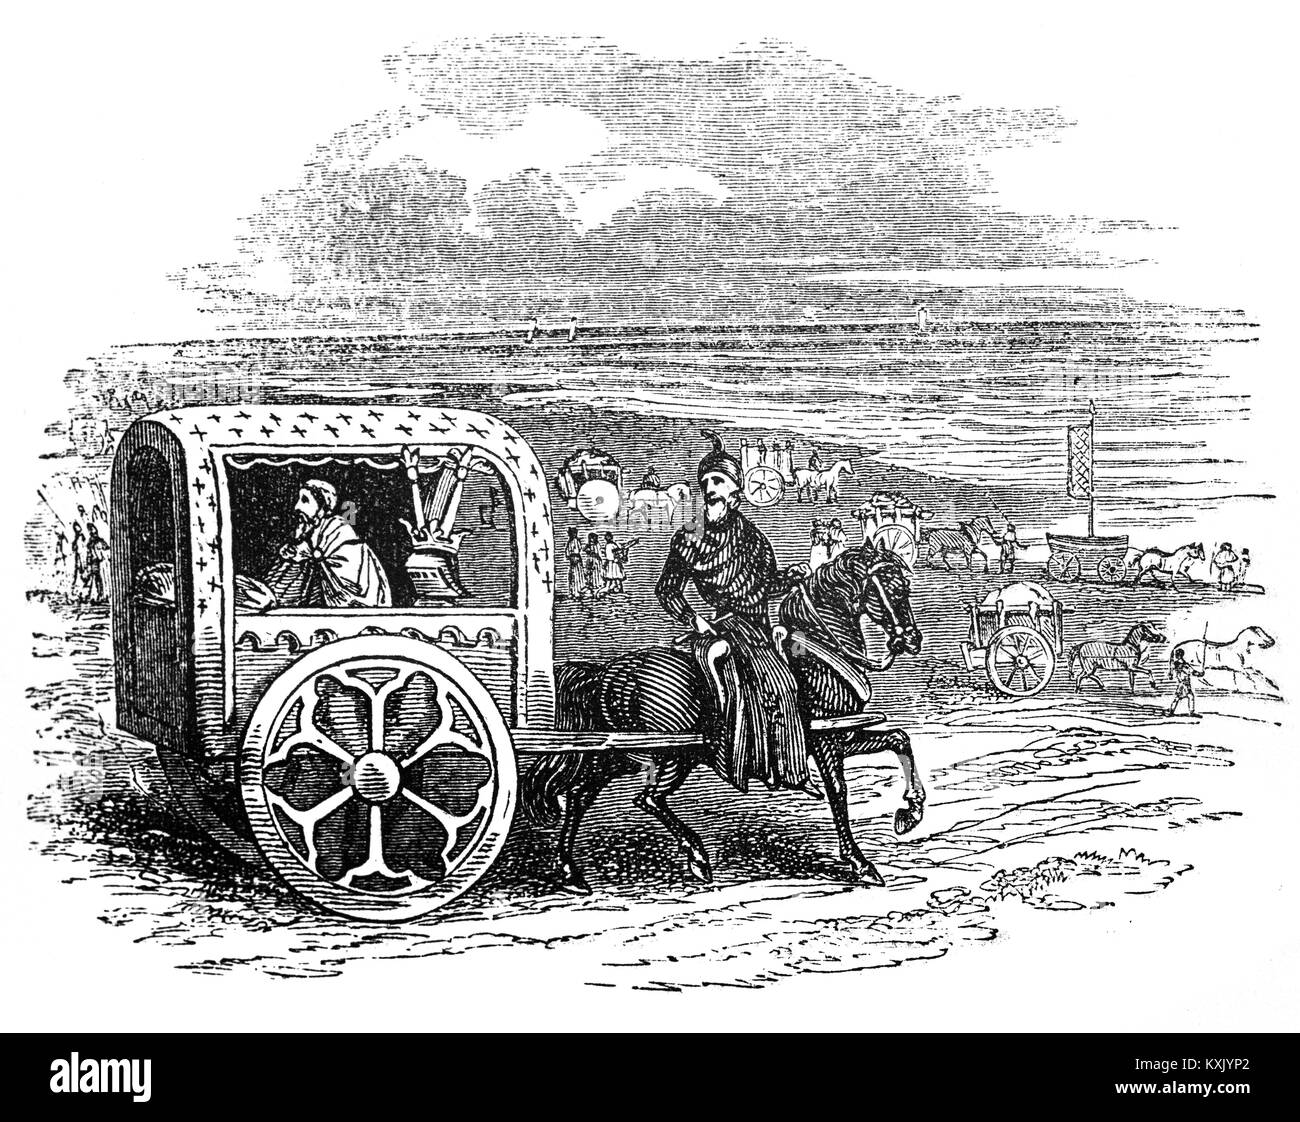 El rey Juan viajando en un carruaje real en Inglaterra durung principios del siglo XIII. Foto de stock